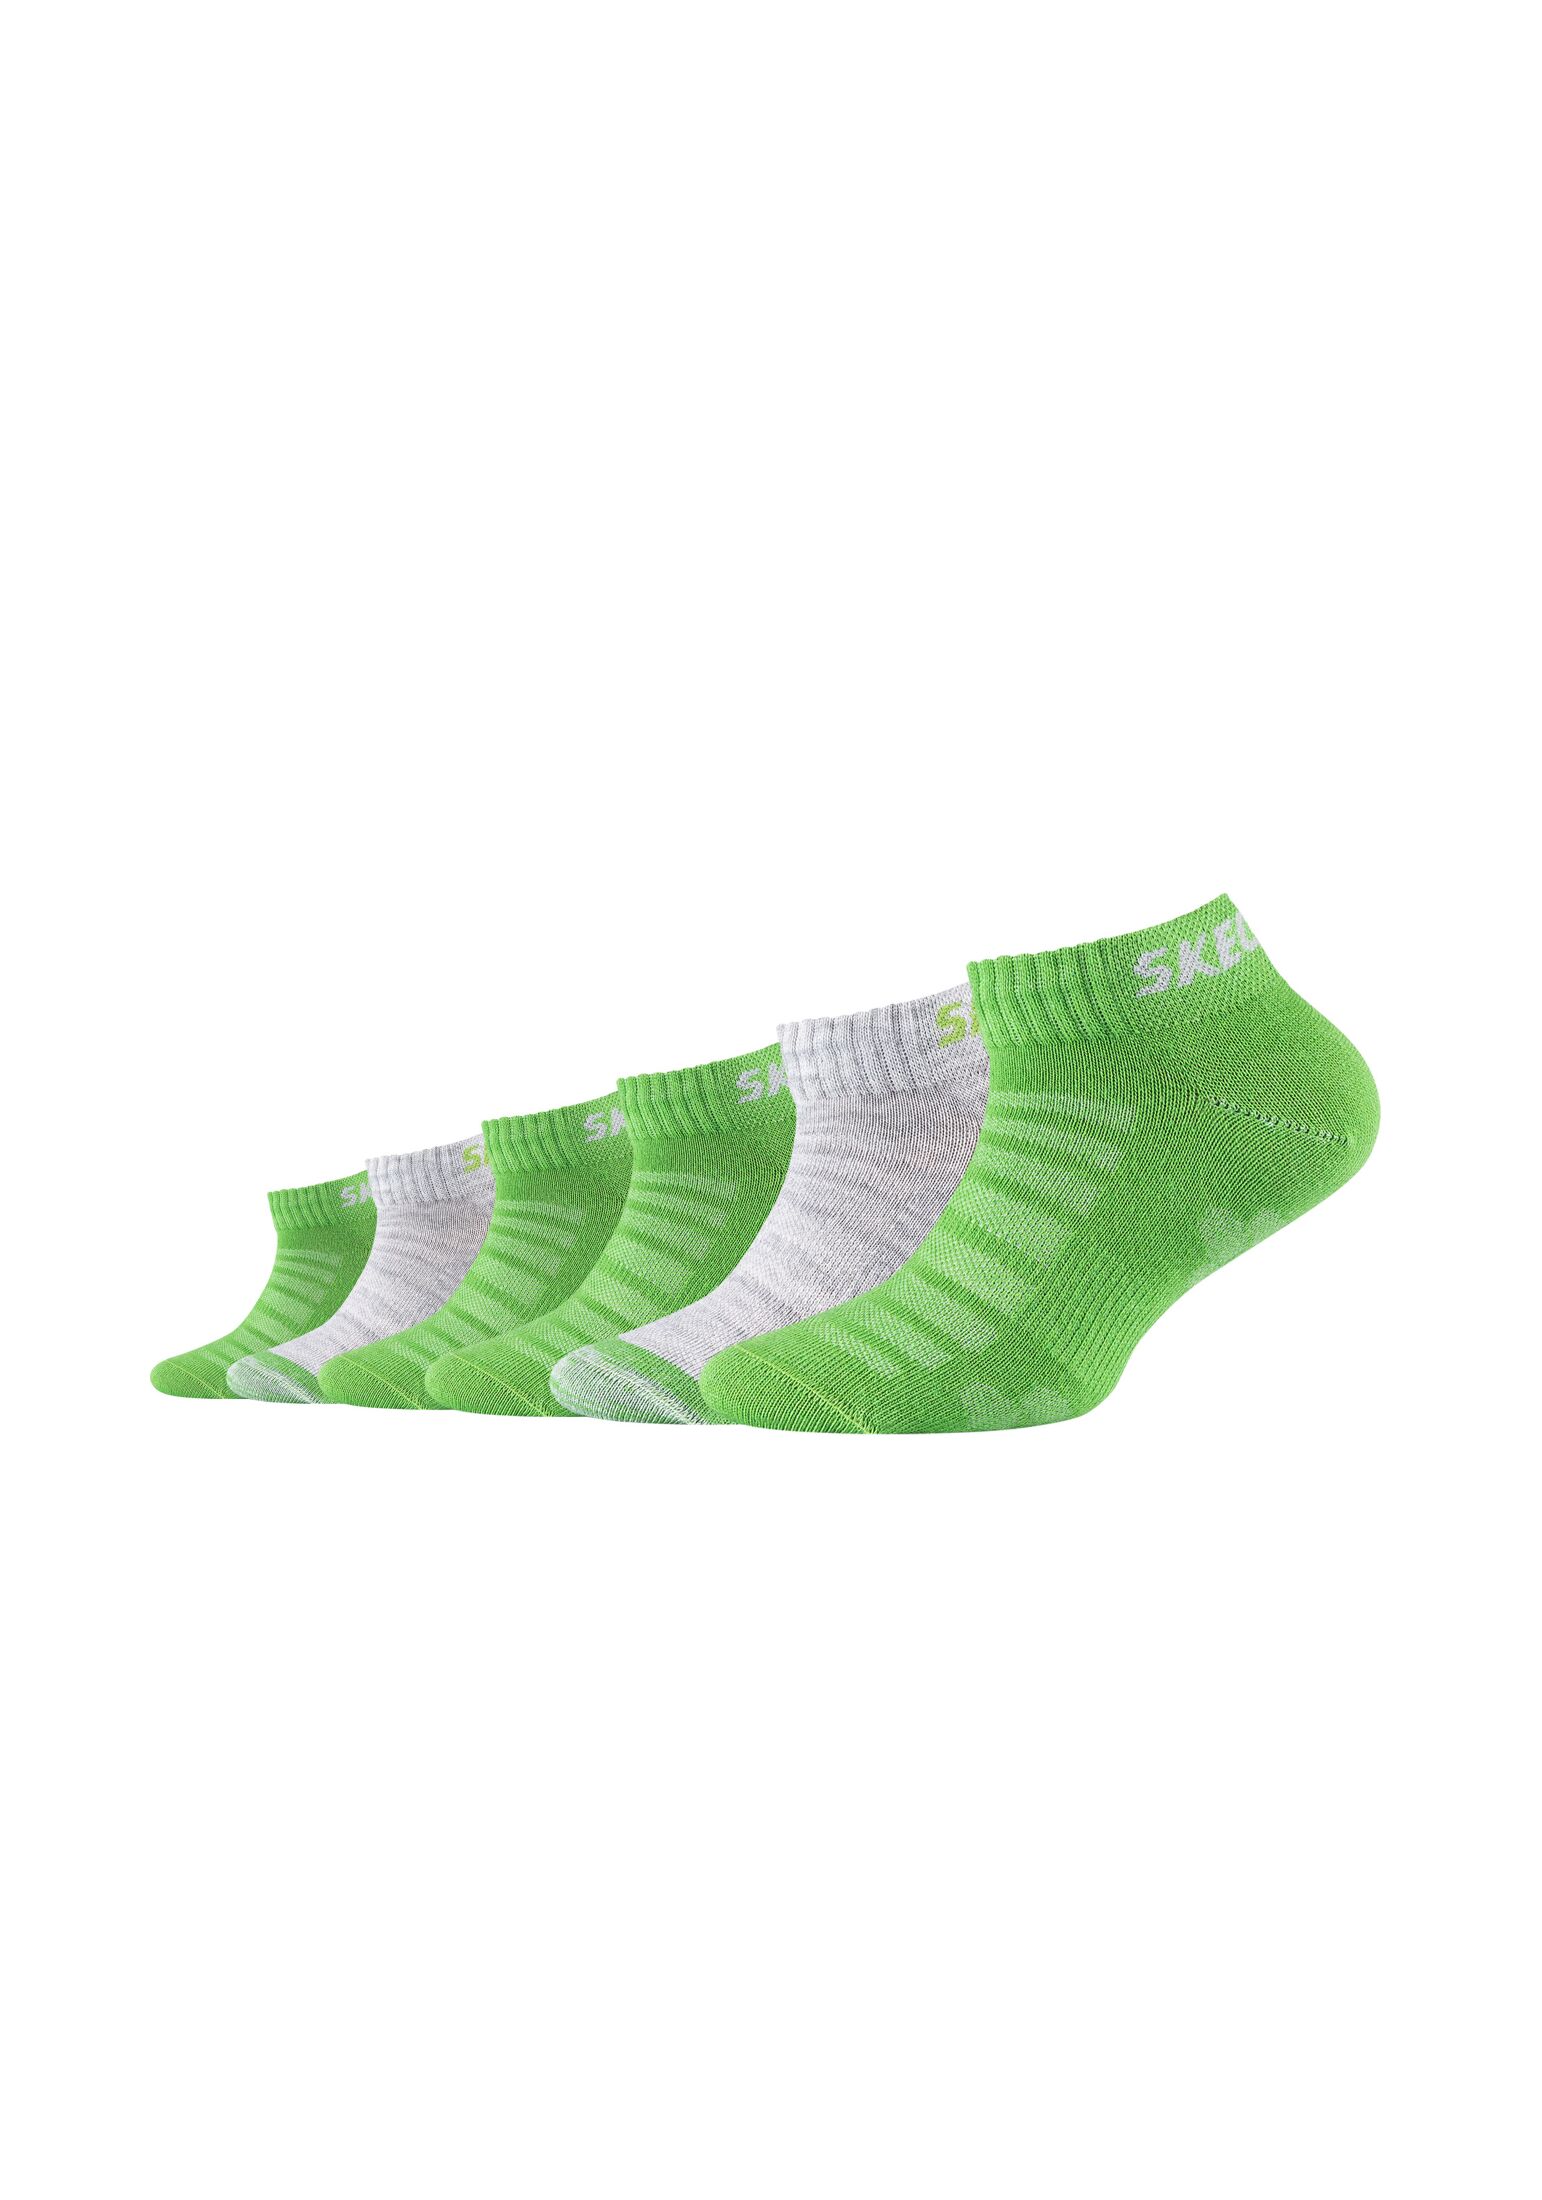 Носки Skechers Sneaker 6 шт mesh ventilation, цвет cactus носки skechers sneaker 6 шт mesh ventilation цвет pink glow mix